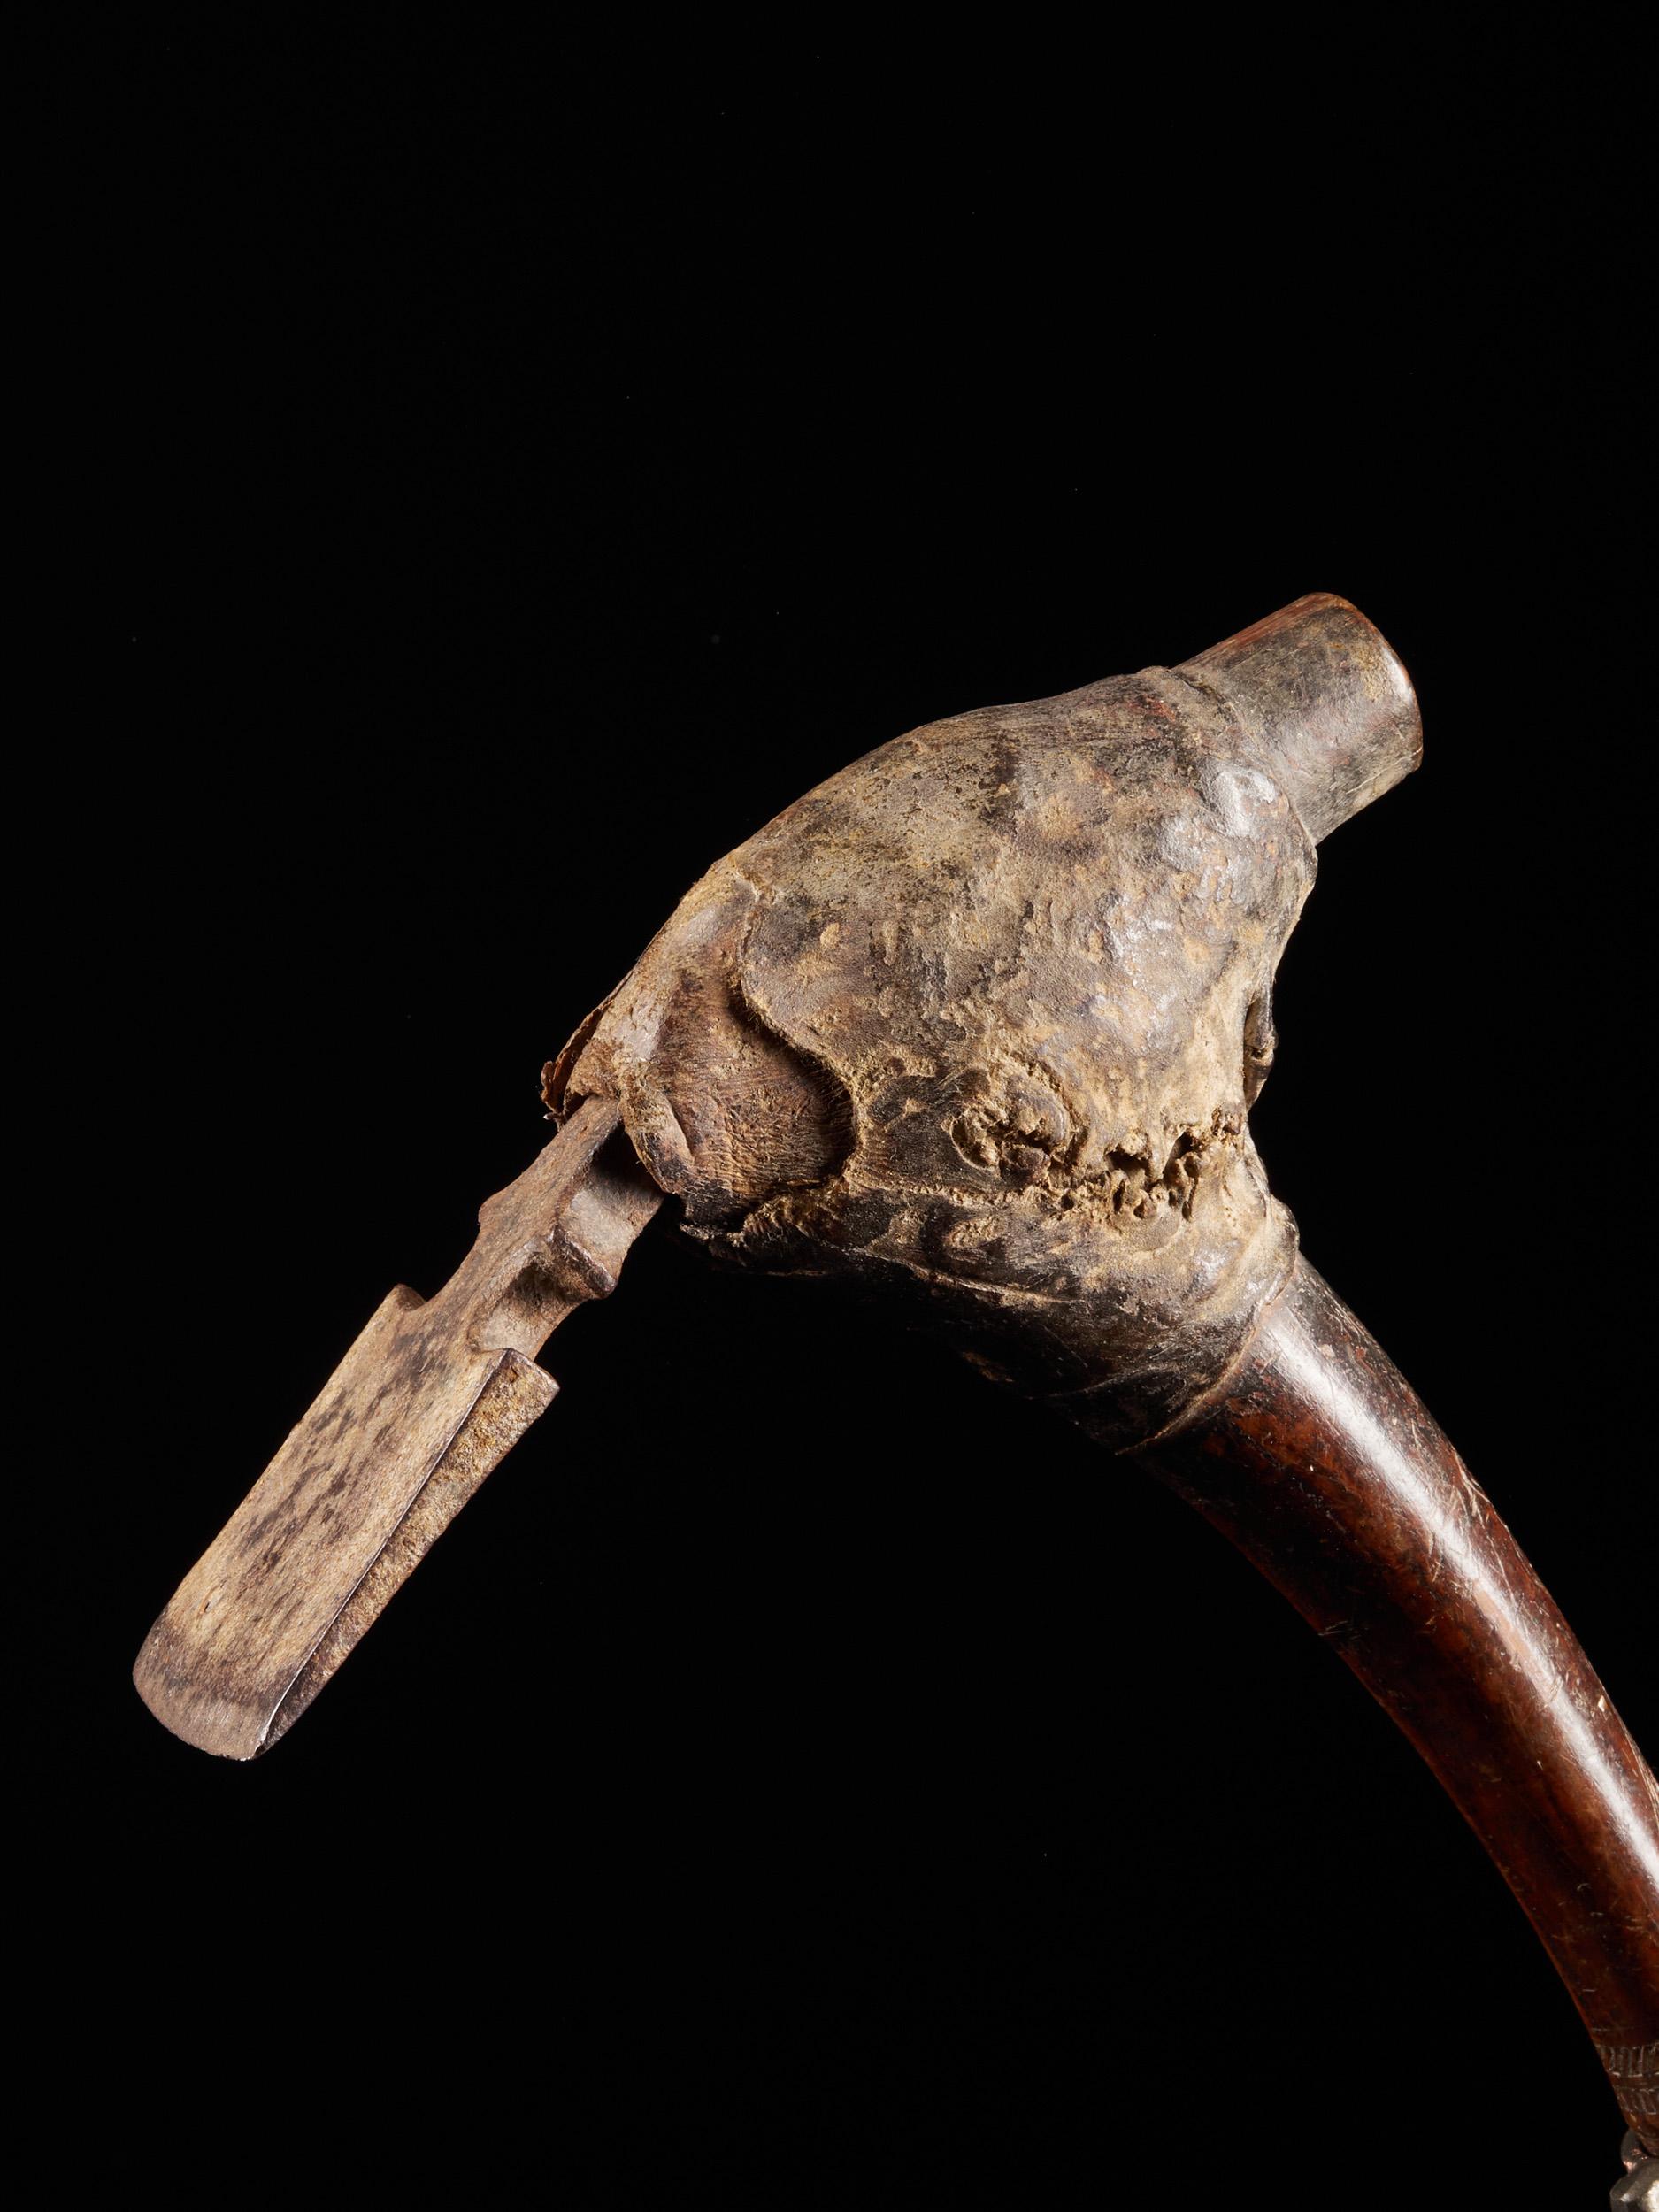 Ein Beil ist ein Schneidwerkzeug, das einer Axt ähnelt, dessen Schneide jedoch nicht parallel, sondern senkrecht zum Stiel verläuft. Prähistorische Māori-Stecheisen aus Neuseeland, die zum Schnitzen von Holz verwendet wurden, waren aus Nephrit (auch